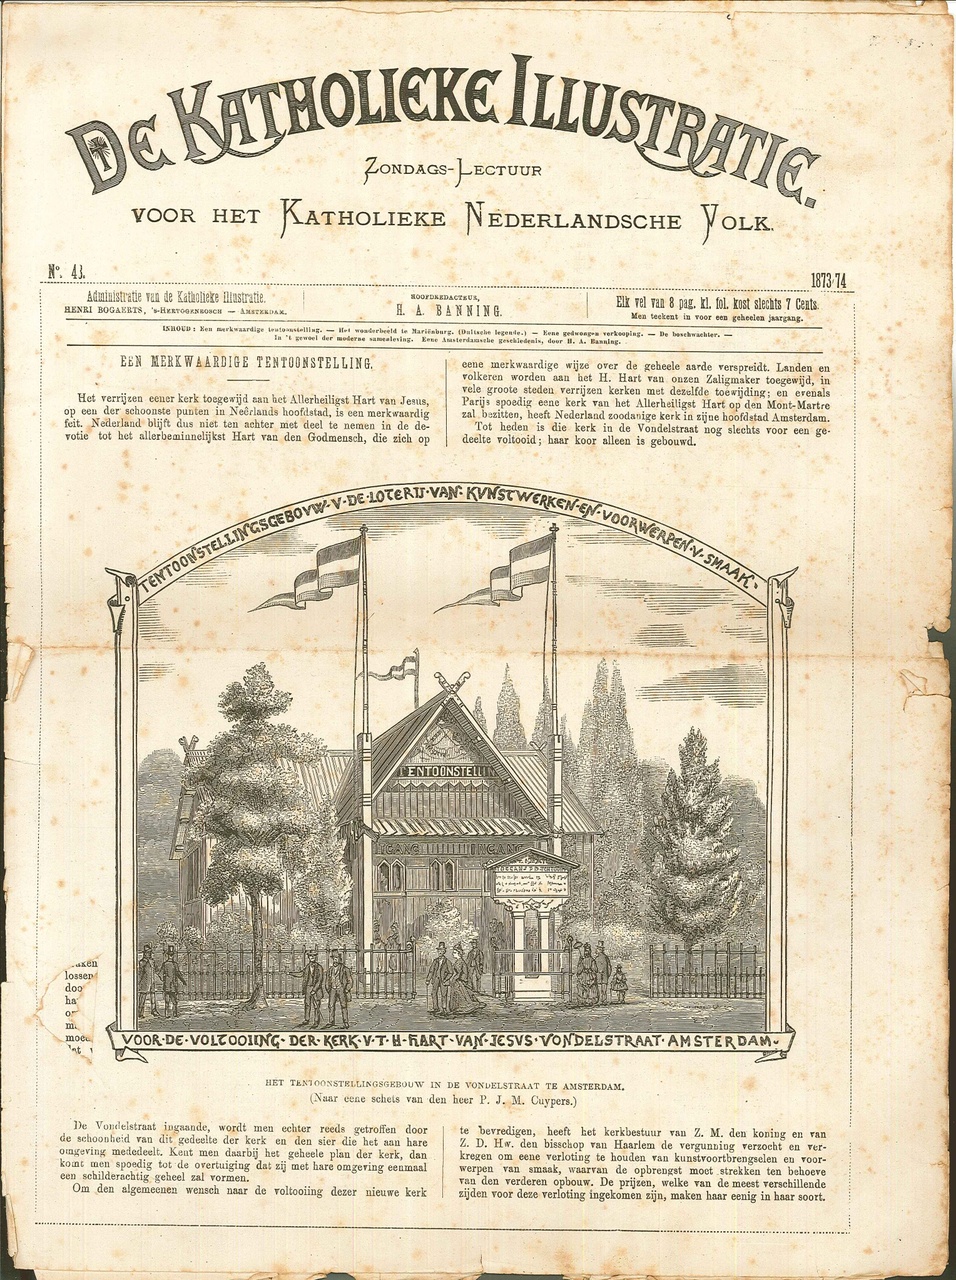 Tijdschrift "De Katholieke Illustratie" uit 1873 (No.43)